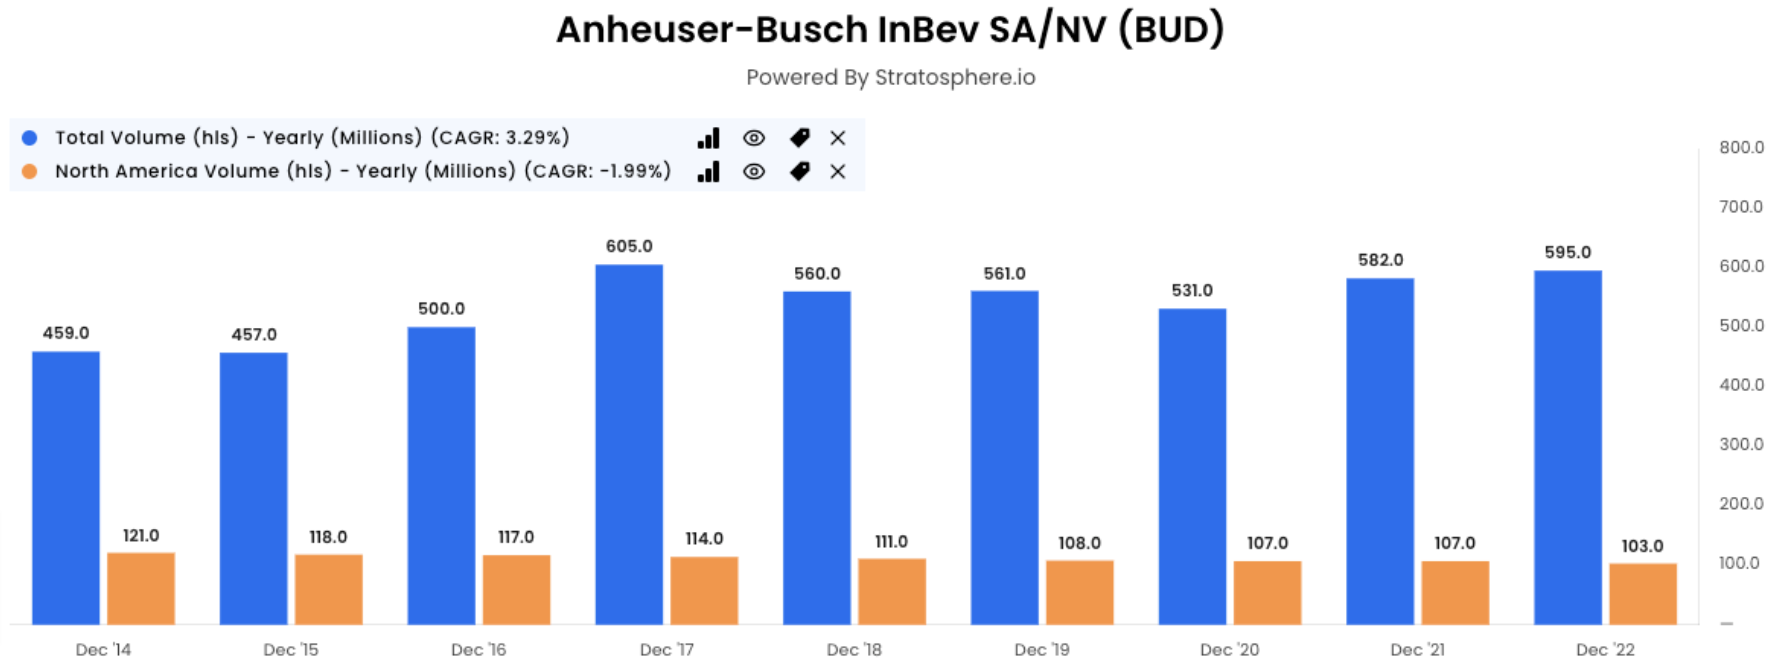 Anheuser-Busch InBev SA/NV total volume graph